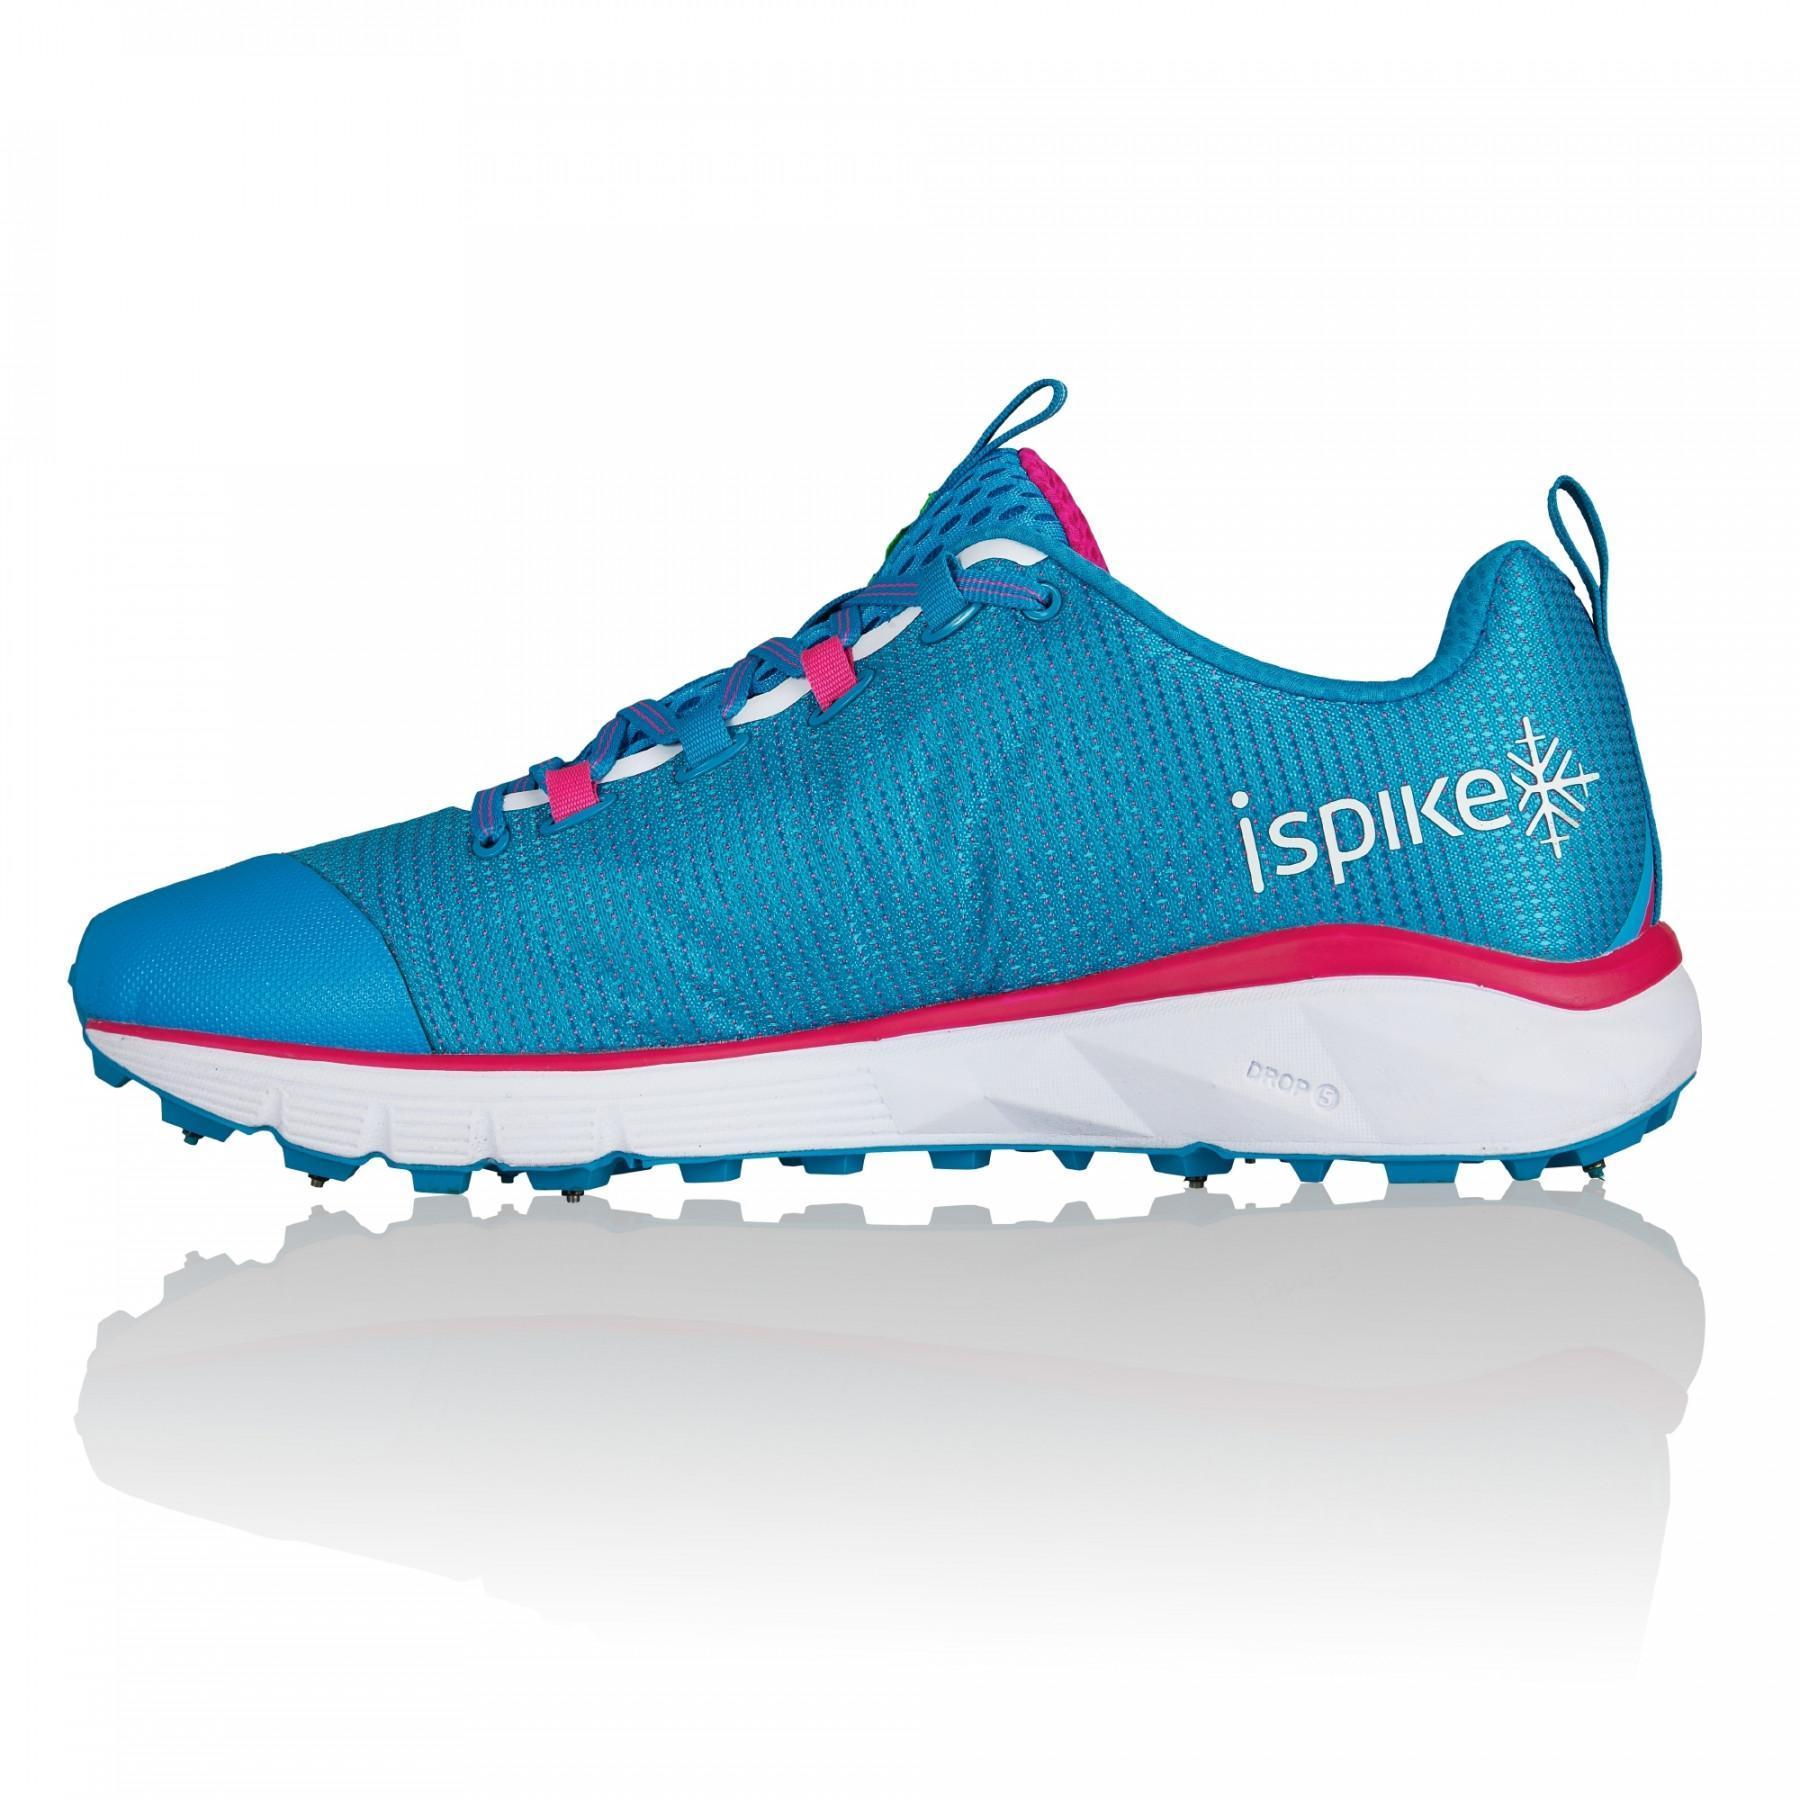 Chaussures de running femme Salming Ipsike